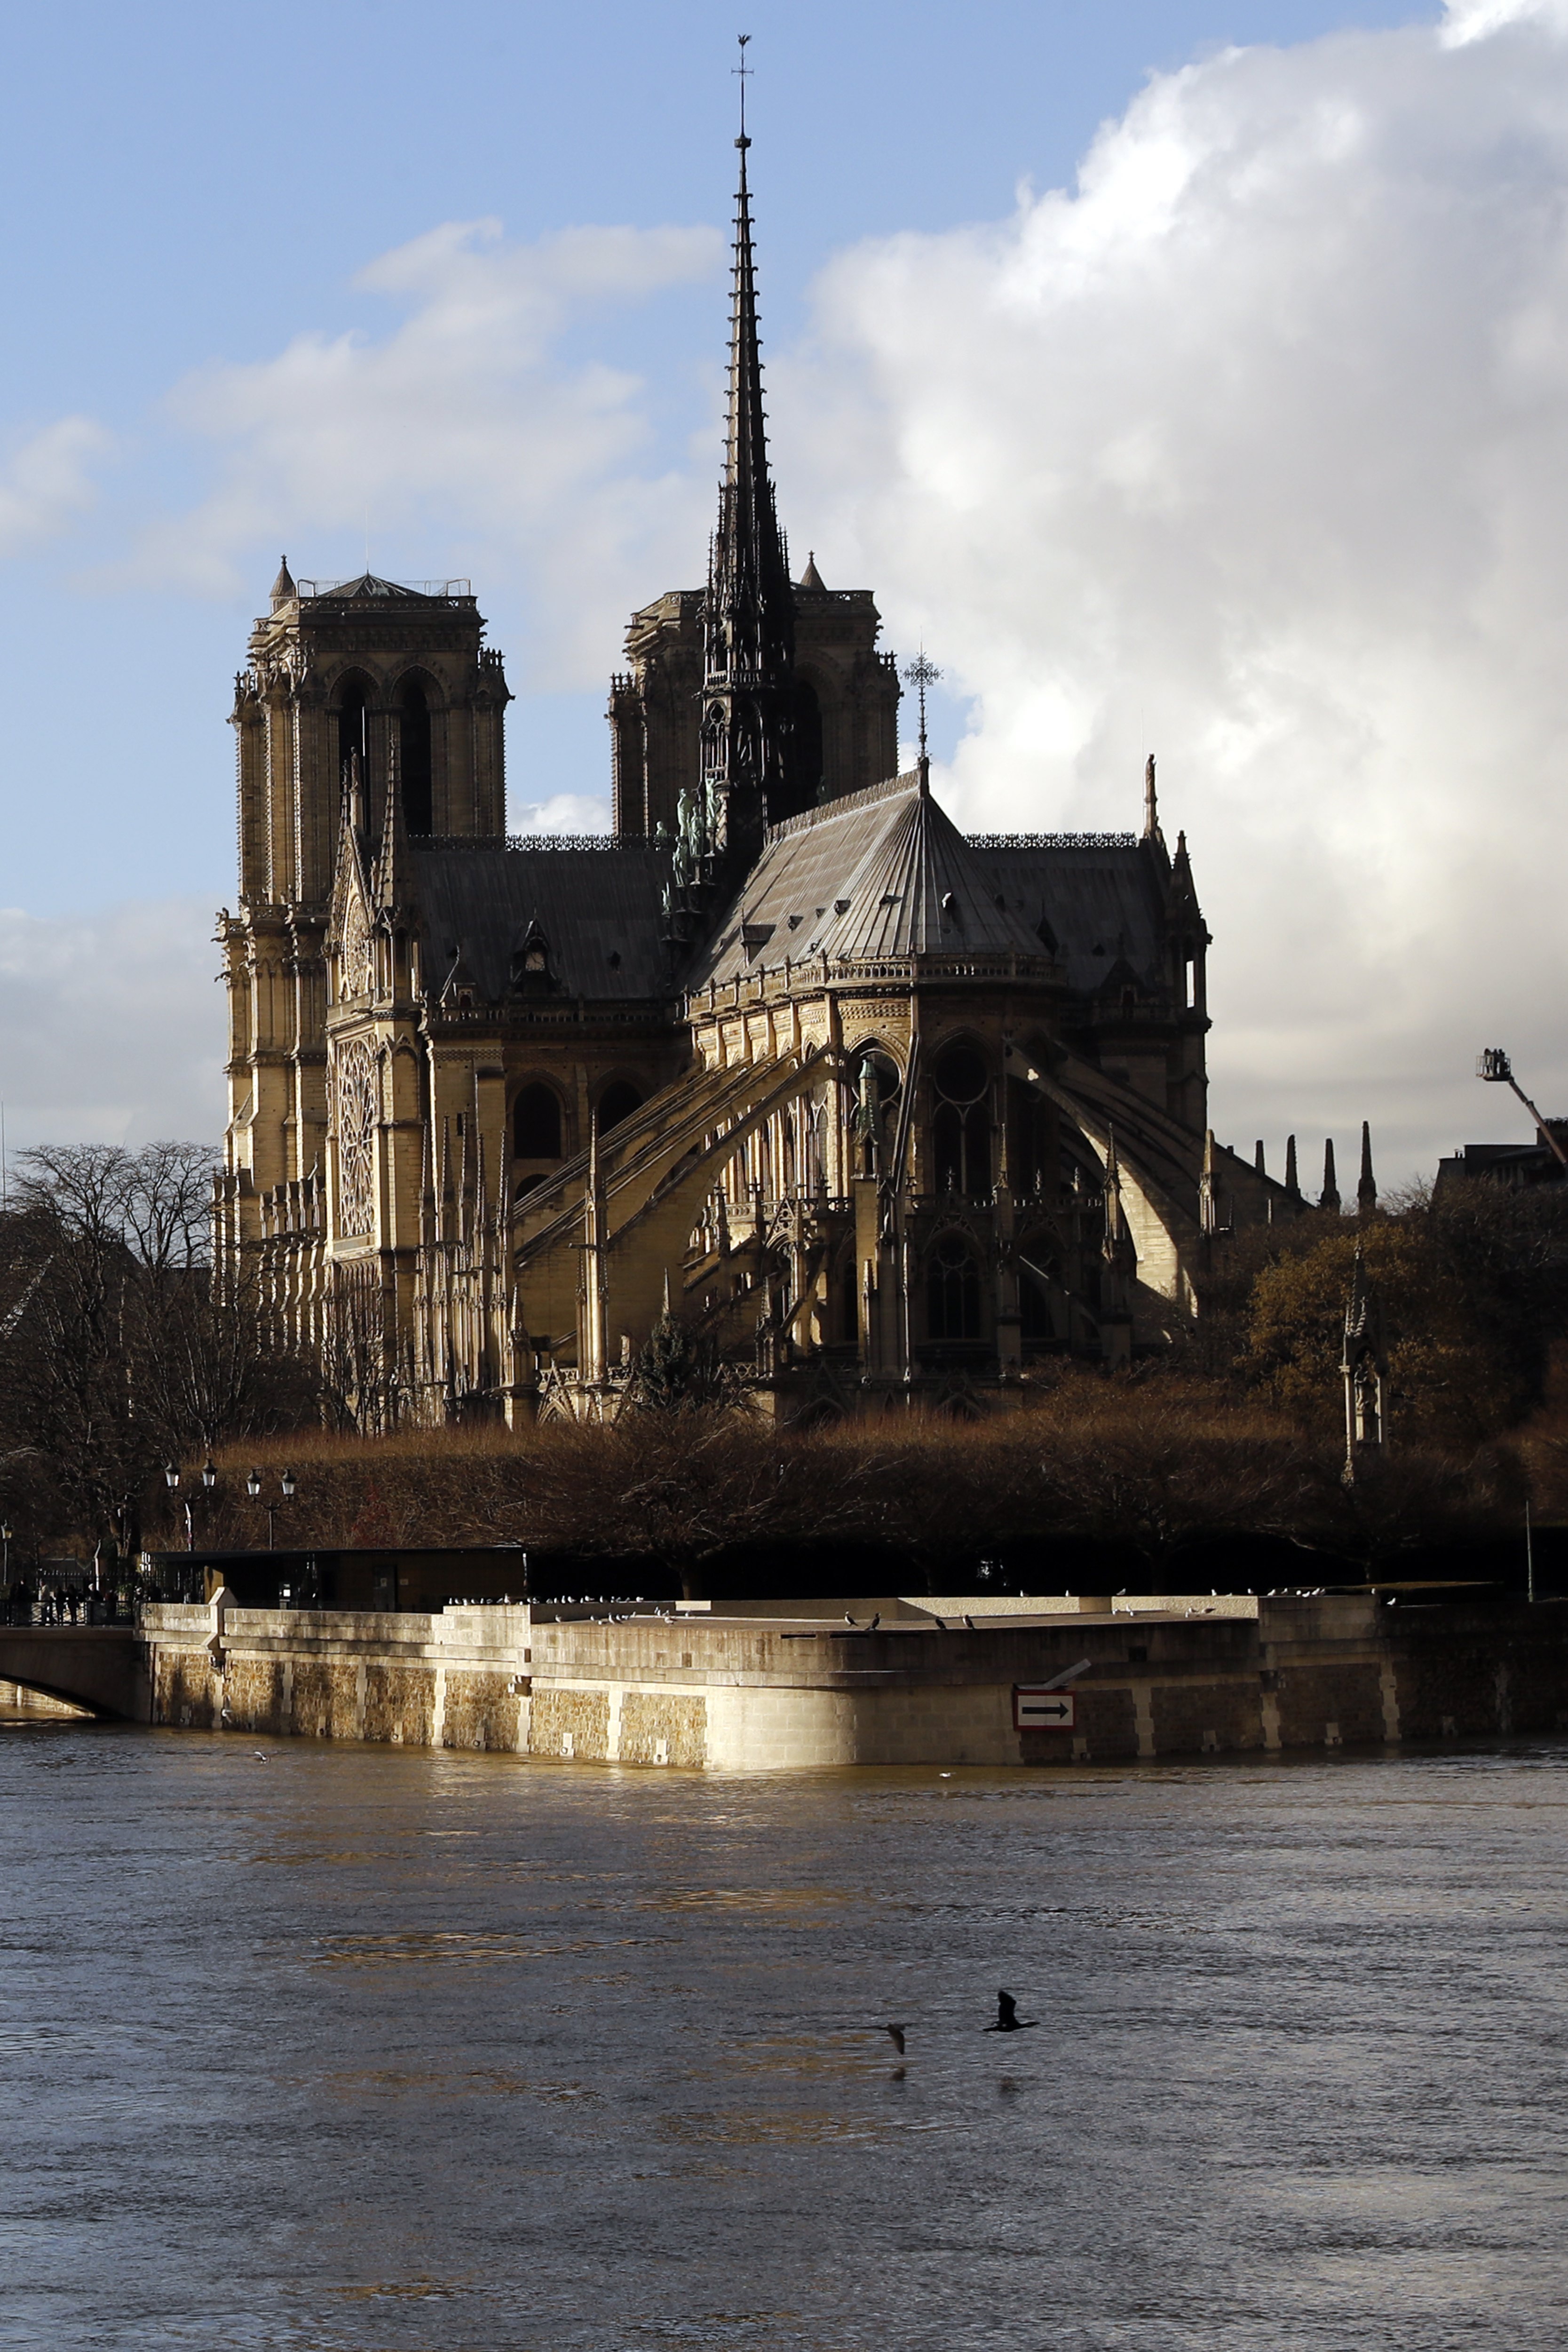 Крайбрежните домове и офиси във френската столица Париж са нащрек, след като река Сена продължава да покачва нивото си и заплашва да залее бреговете.